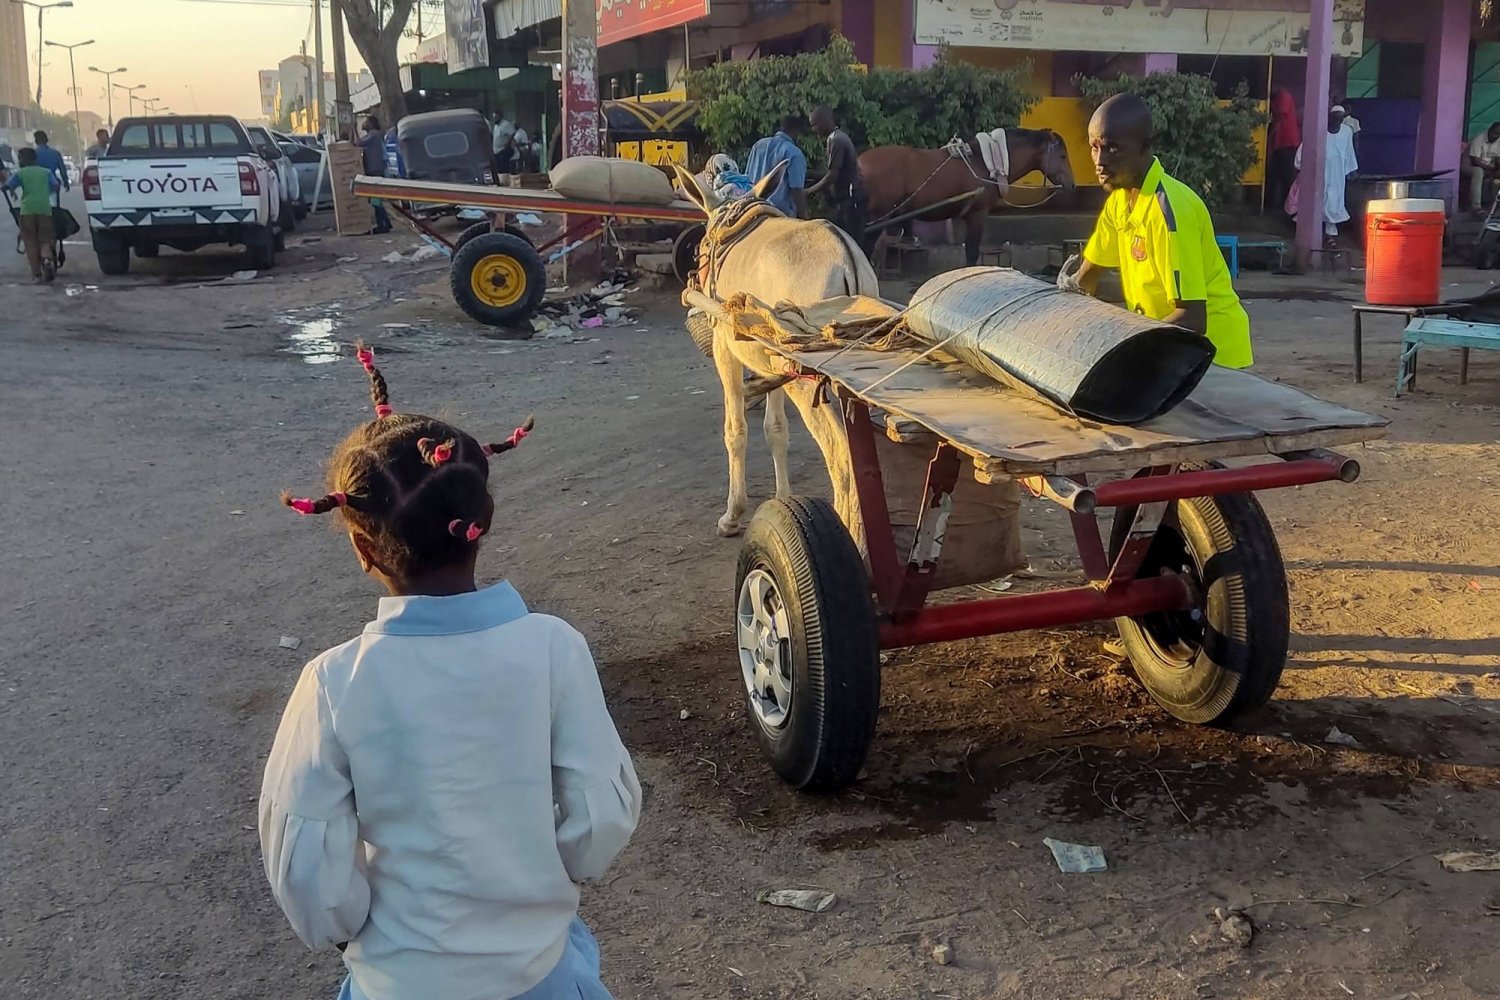 مواطنون في ولاية القضارف السودانية يستخدمون العربات التي تجرها الدواب للتنقل وسط أزمة اقتصادية واسعة النطاق (أ.ف.ب)